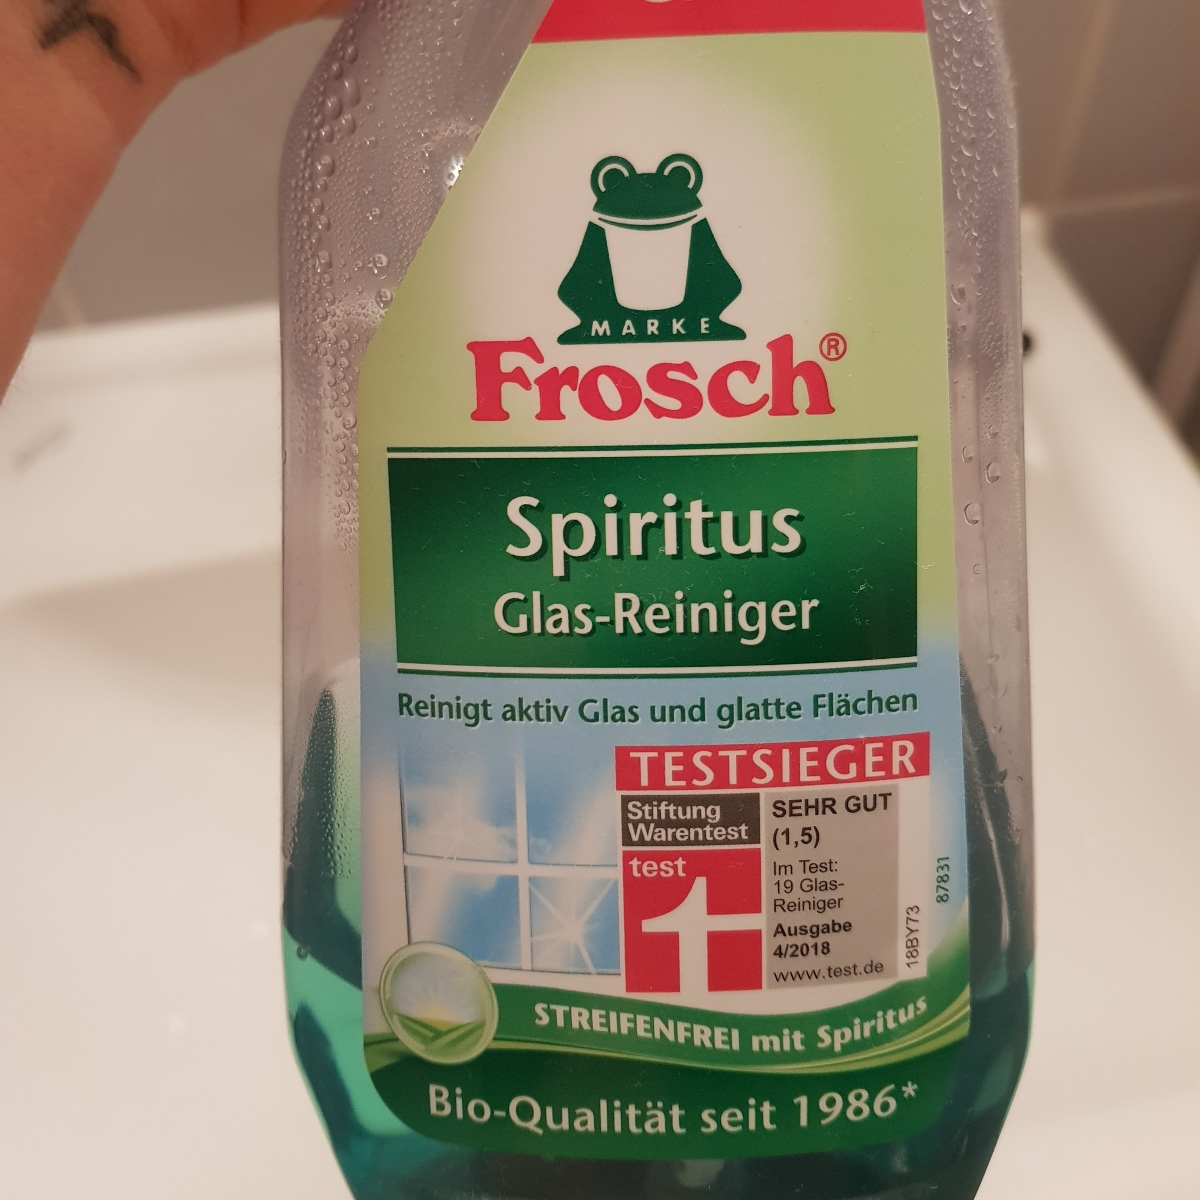 Frosch Spiritus Glasreiniger | spiritus glass cleaner Reviews | abillion